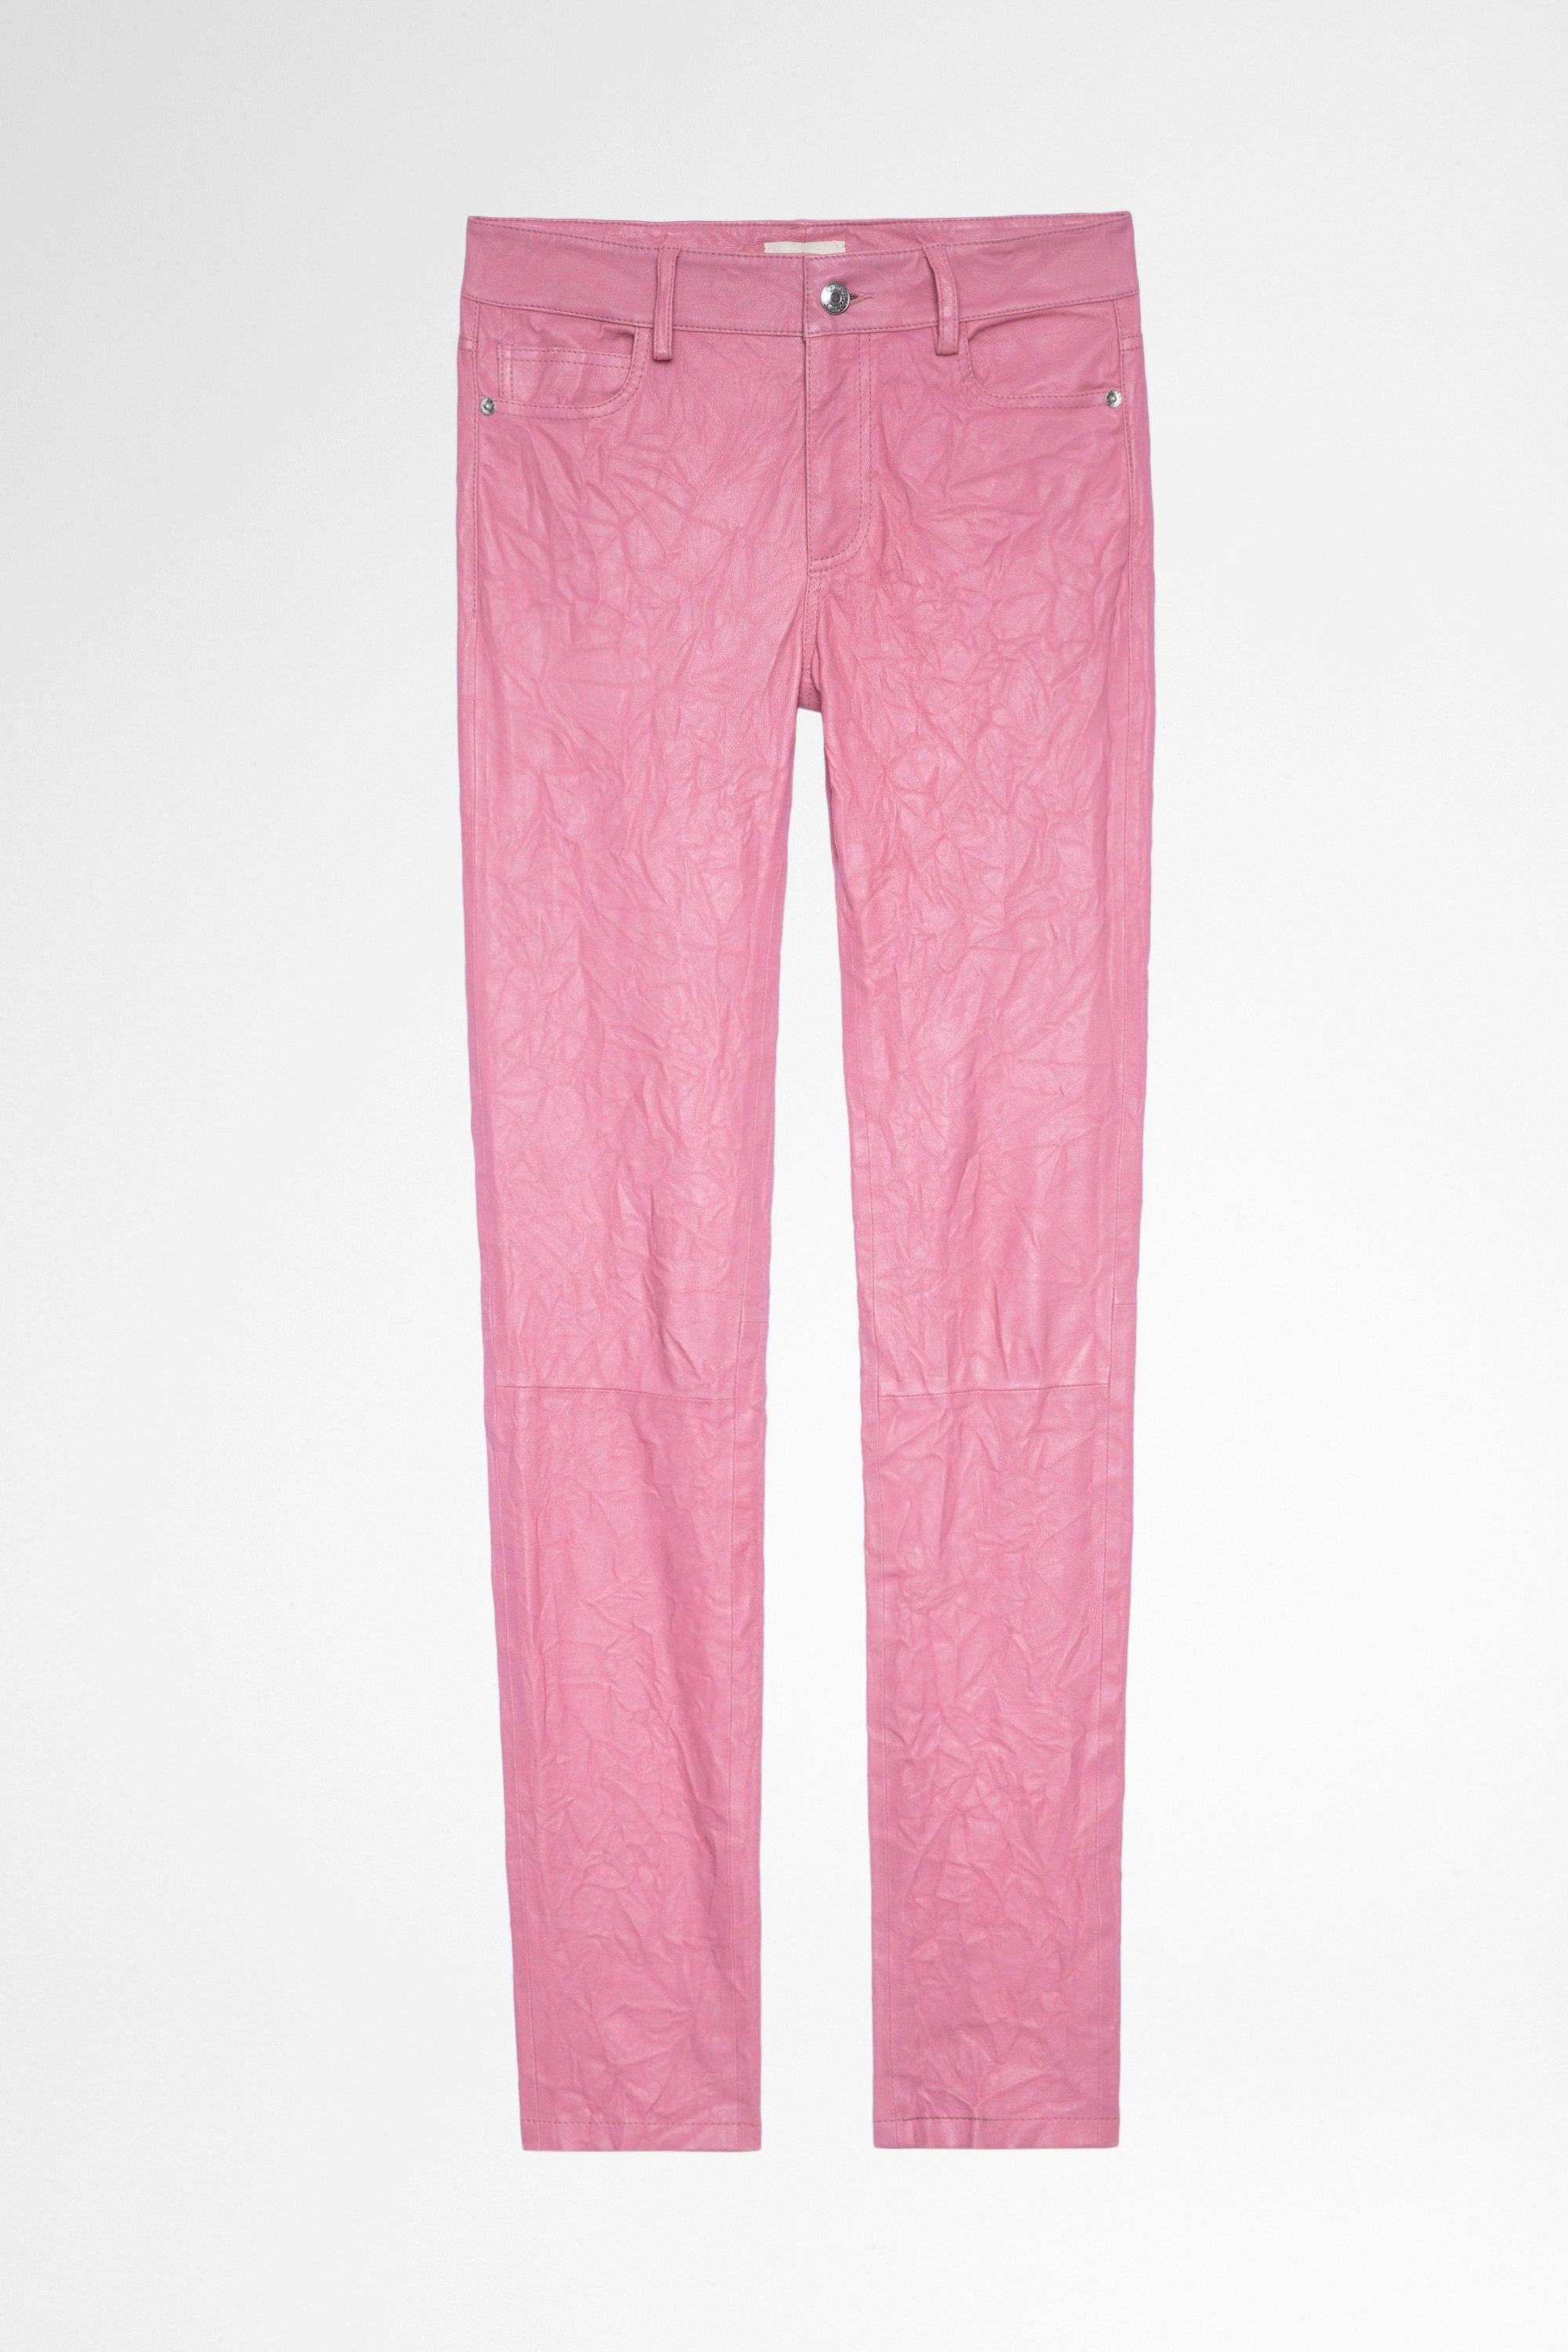 Pantaloni Phlame in pelle stropicciata Pantaloni in pelle stropicciata rosa, donna. Acquistando questo prodotto, sostieni la produzione responsabile della pelle attraverso il Leather Working Group